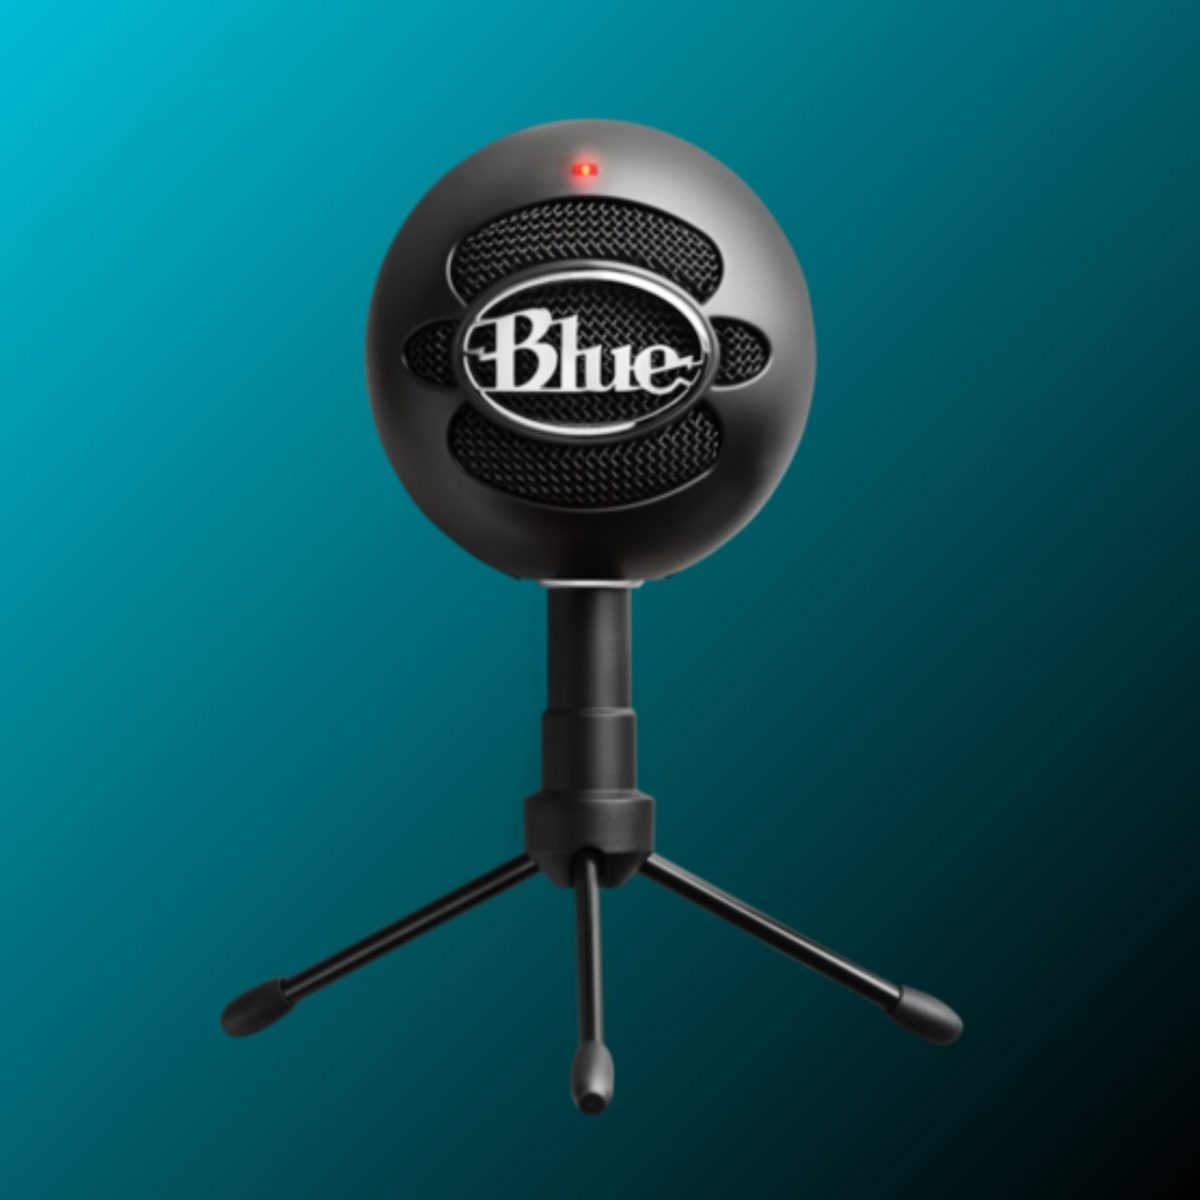 Mikrofon Blue Microphones Snowball iCE Plug'nPlay USB Aufnahme schwarz OVP fehlt 